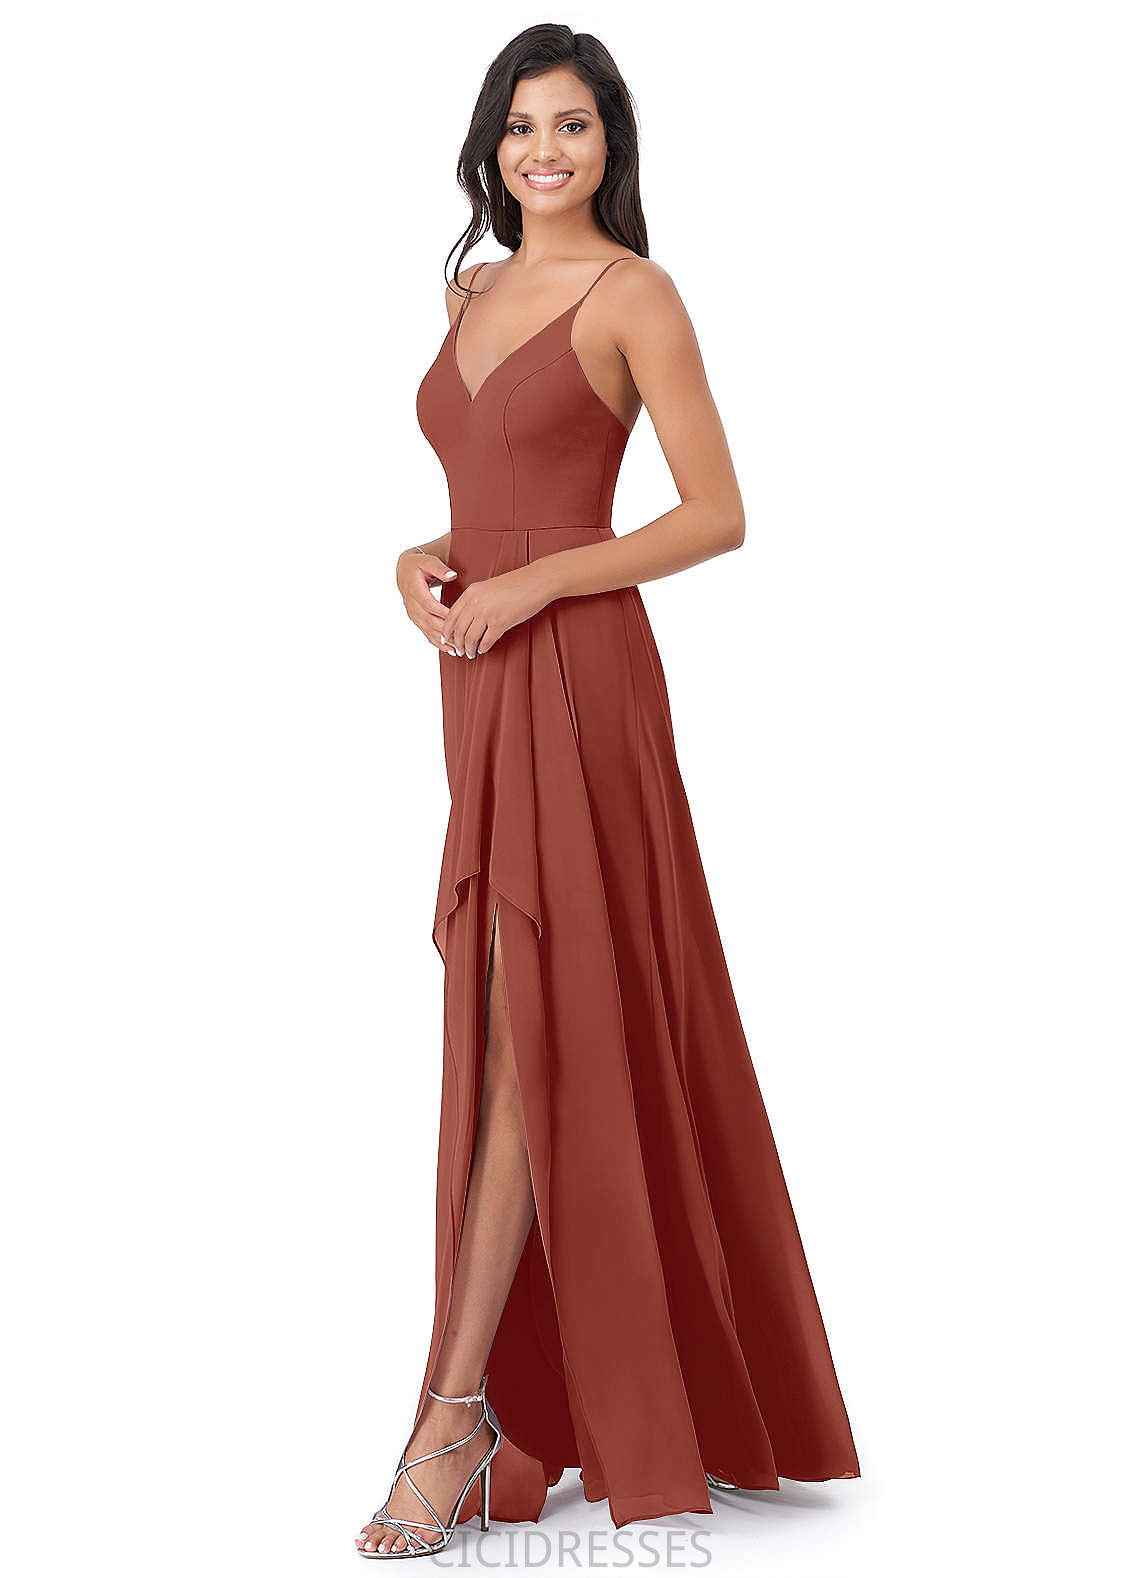 Alyson Natural Waist A-Line/Princess Sleeveless Floor Length V-Neck Bridesmaid Dresses